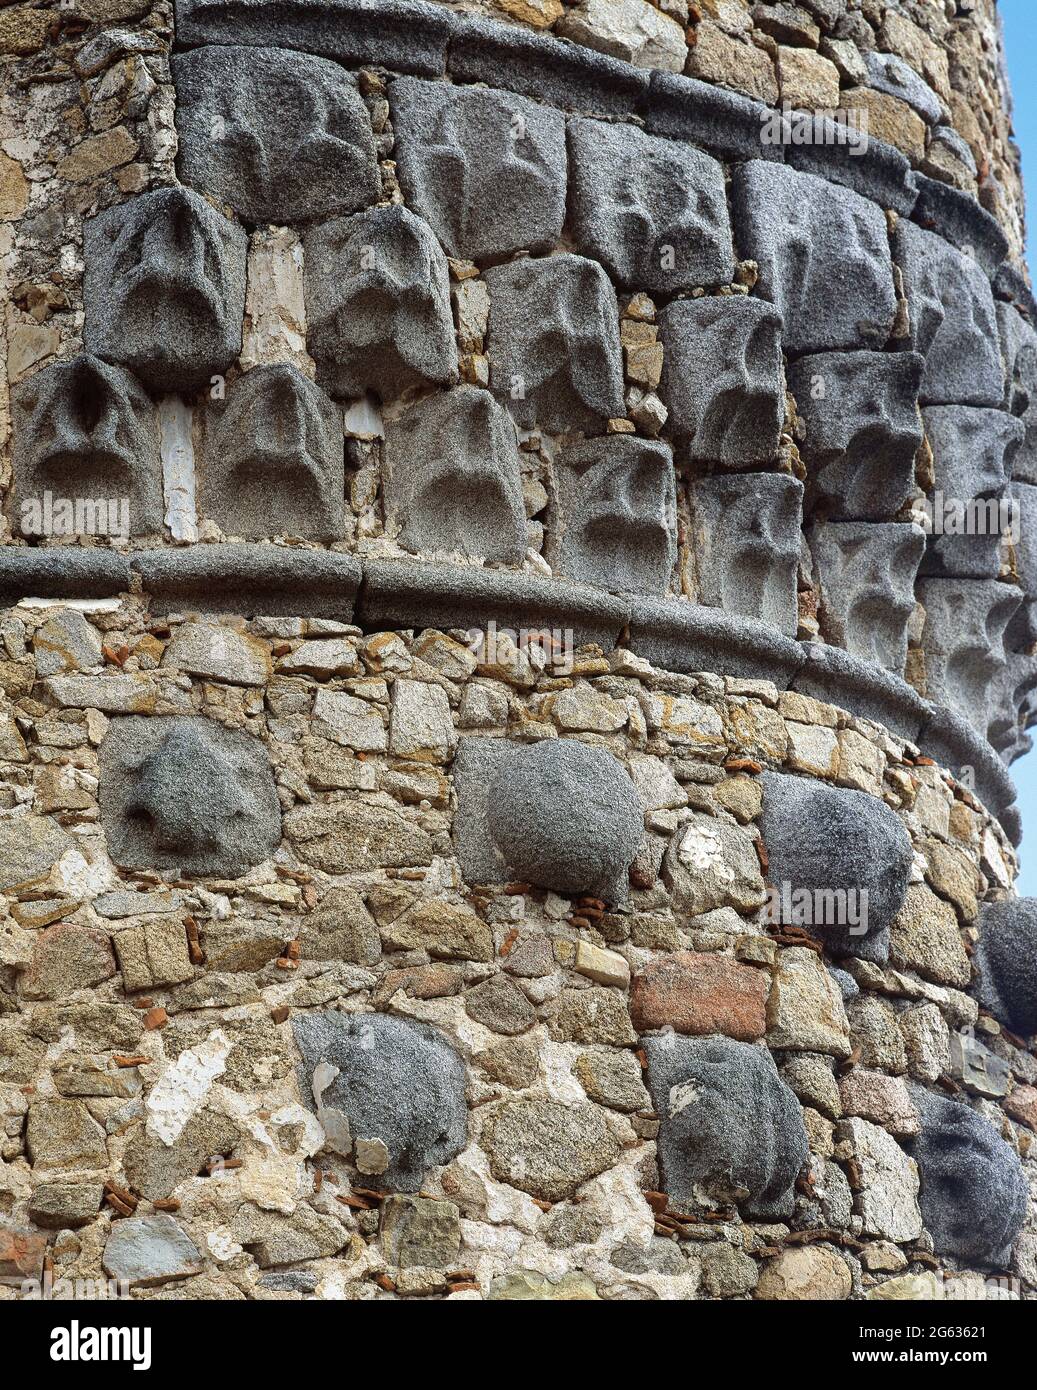 Spanien, Gemeinde Madrid, Burg Manzanares El Real. Erbaut im Jahr 1475 im Auftrag von Diego Hurtado de Mendoza, war die Residenz der Mendoza-Familie bis Ende des 16. Jahrhunderts. Architektonisches Detail eines der Türmchen, die die runden Türme überragen und im elisabethanischen Stil dekoriert sind. Stockfoto